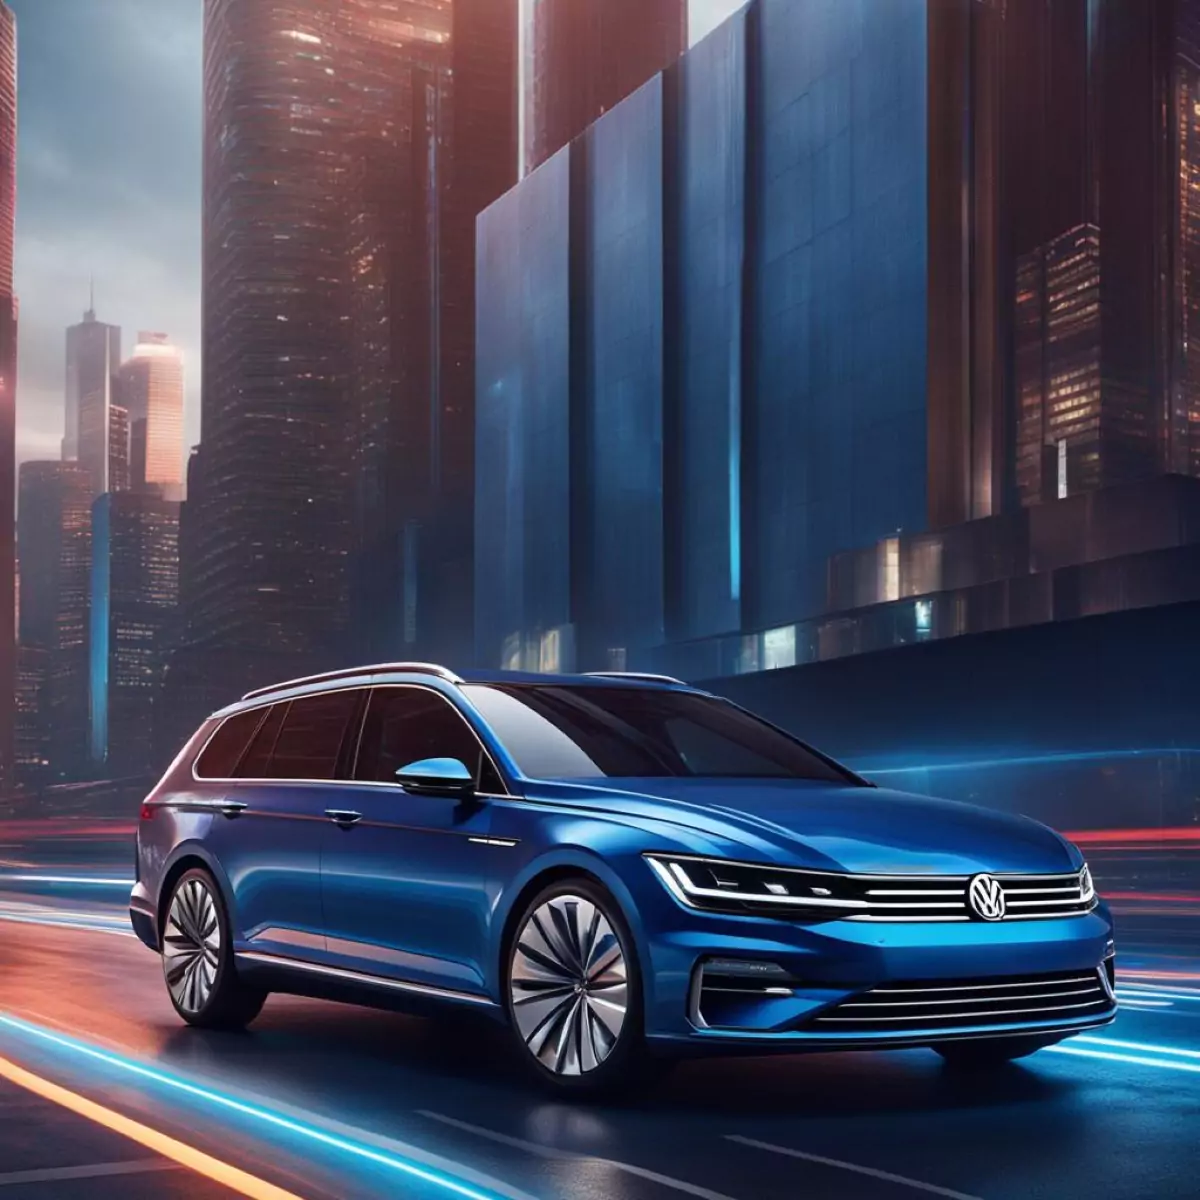 Nova Volkswagen Parati 2026 Concept / Planet Cars